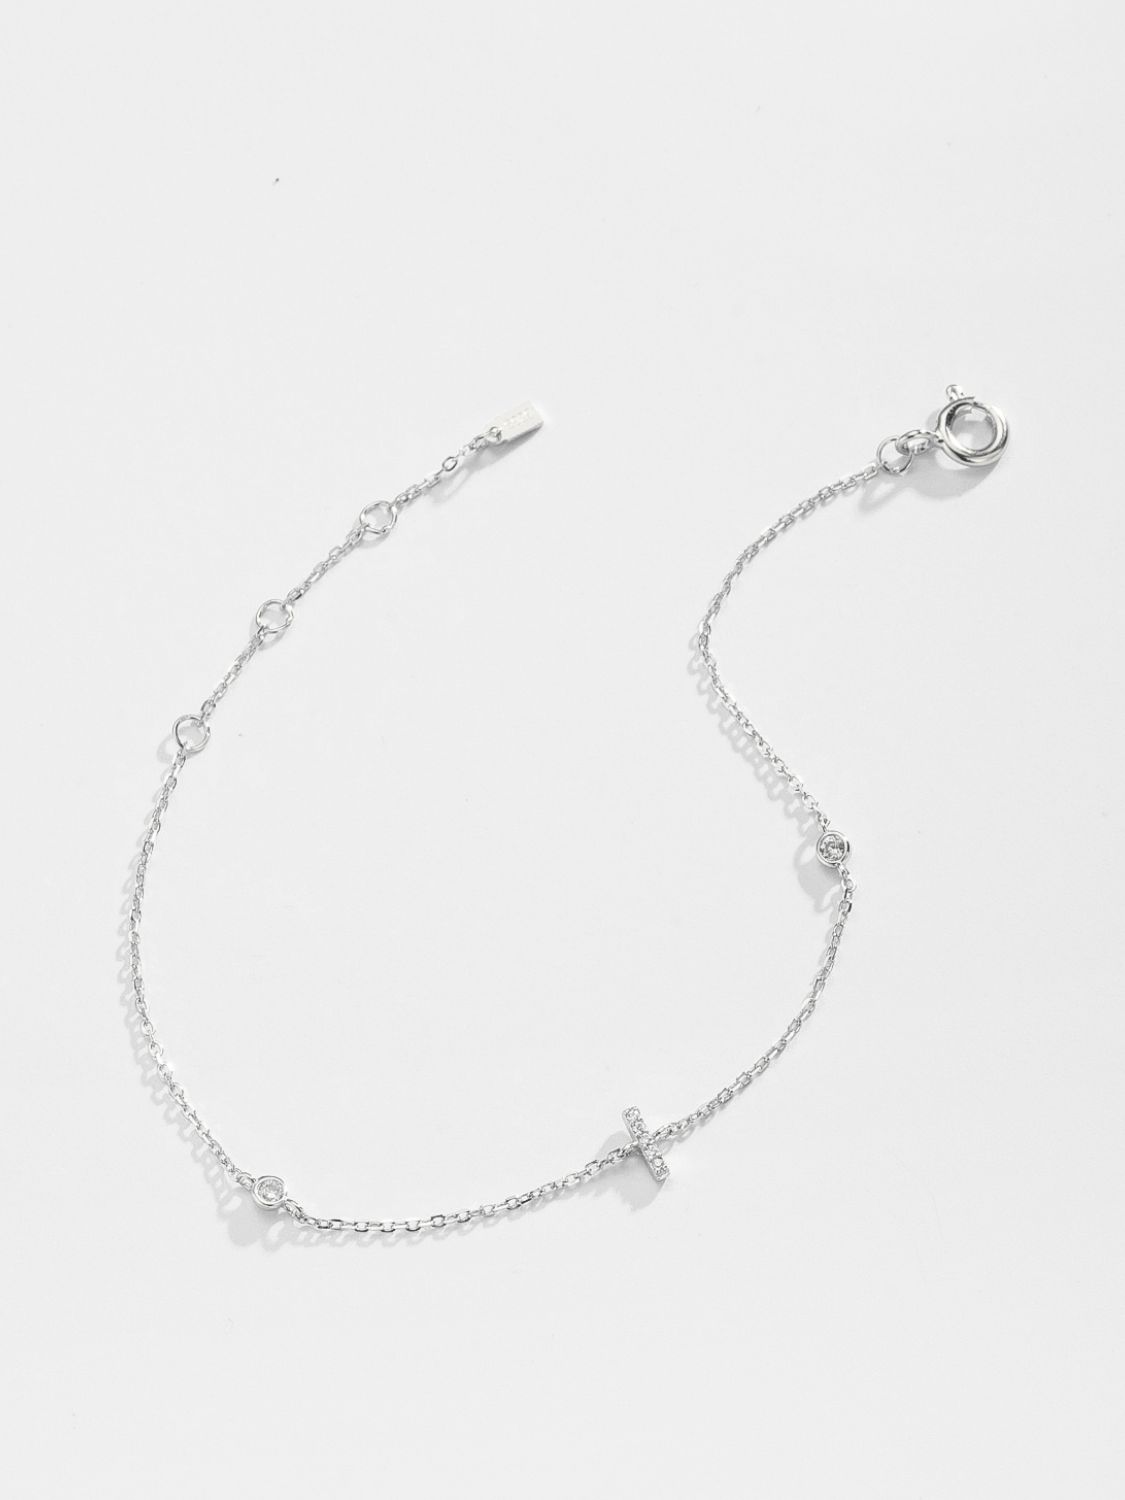 Zircon 925 Sterling Silver Bracelet - Women’s Jewelry - Bracelets - 17 - 2024